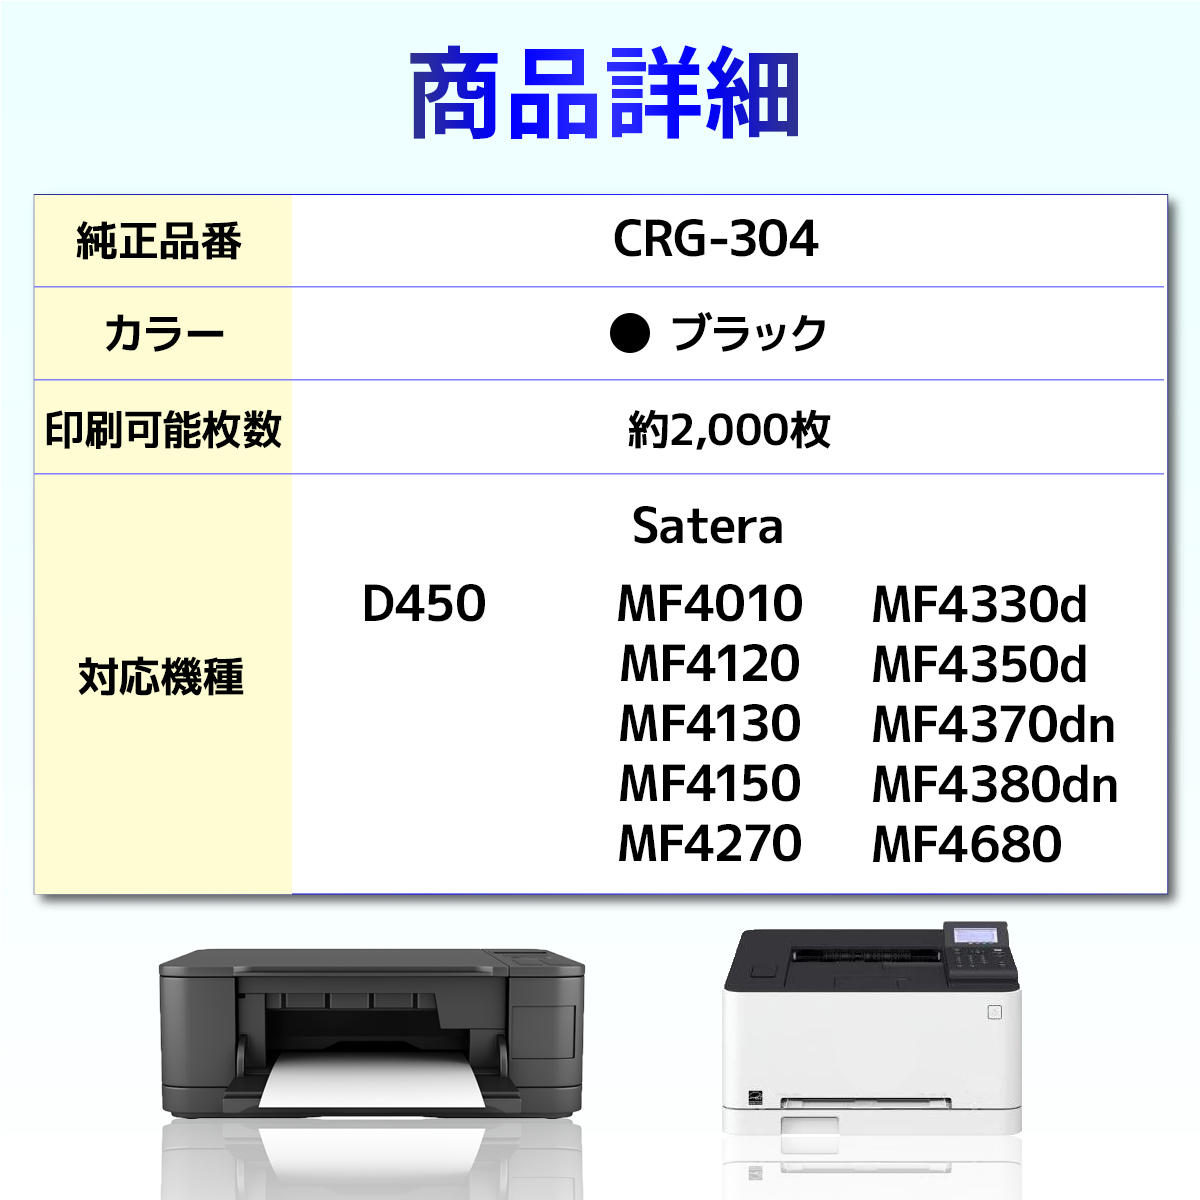 CRG-304 CRG304 Satera D450 MF4010 MF4120 MF4130 MF4150 MF4270